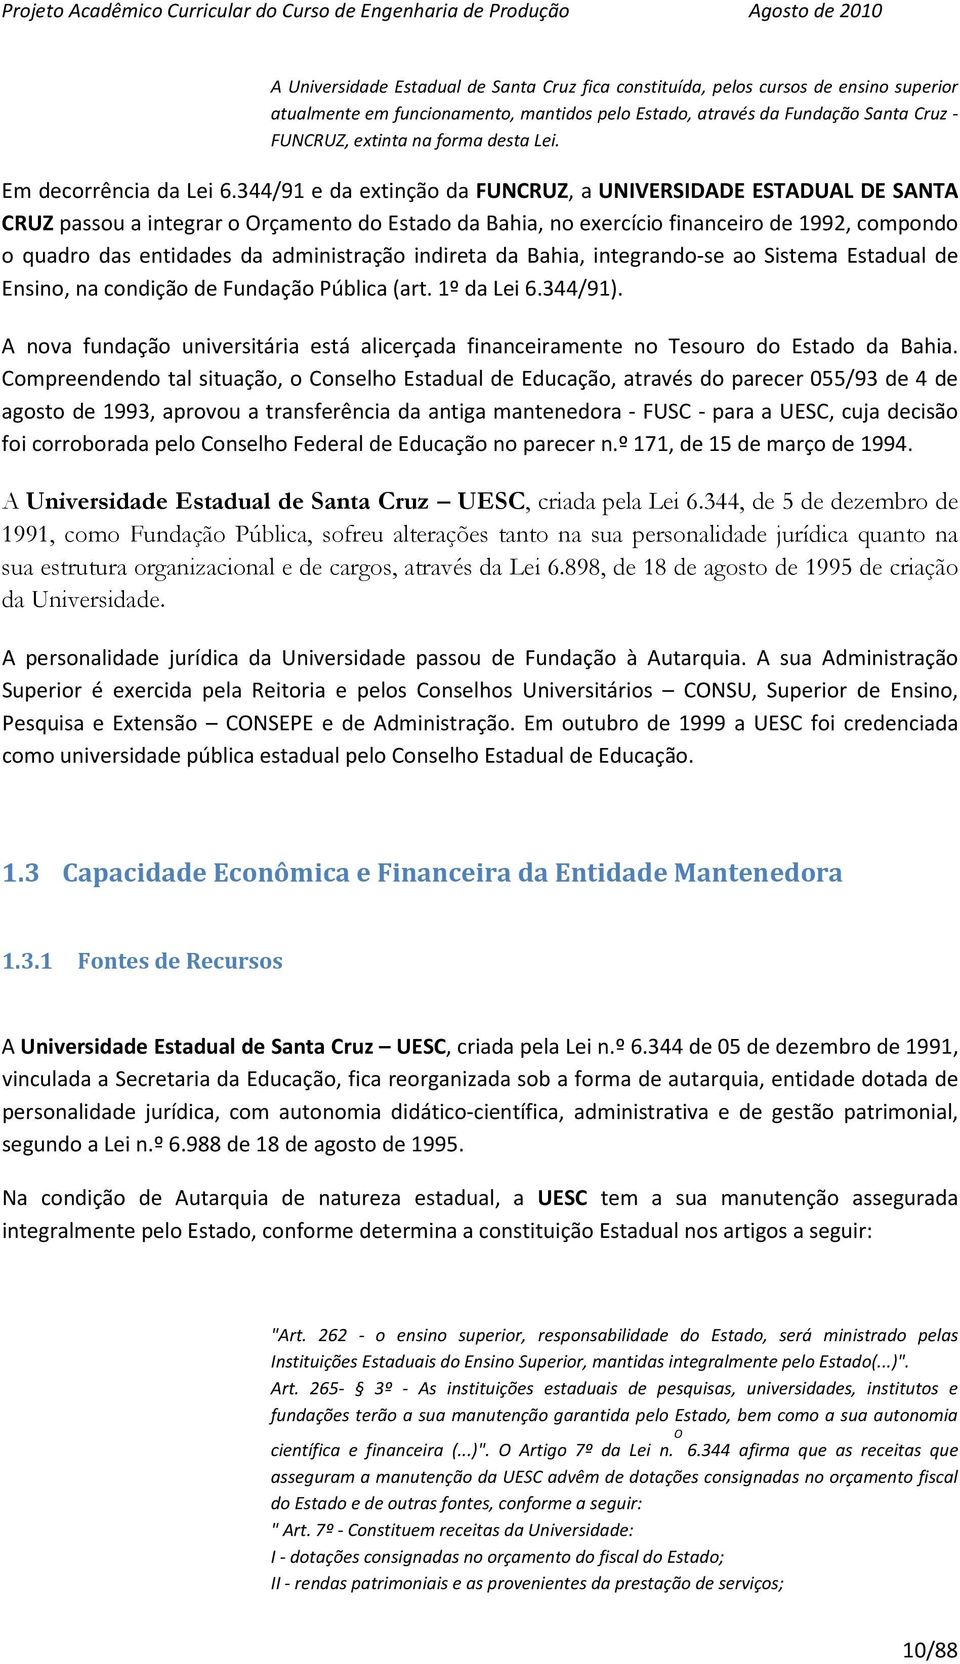 344/91 e da extinção da FUNCRUZ, a UNIVERSIDADE ESTADUAL DE SANTA CRUZ passou a integrar o Orçamento do Estado da Bahia, no exercício financeiro de 1992, compondo o quadro das entidades da